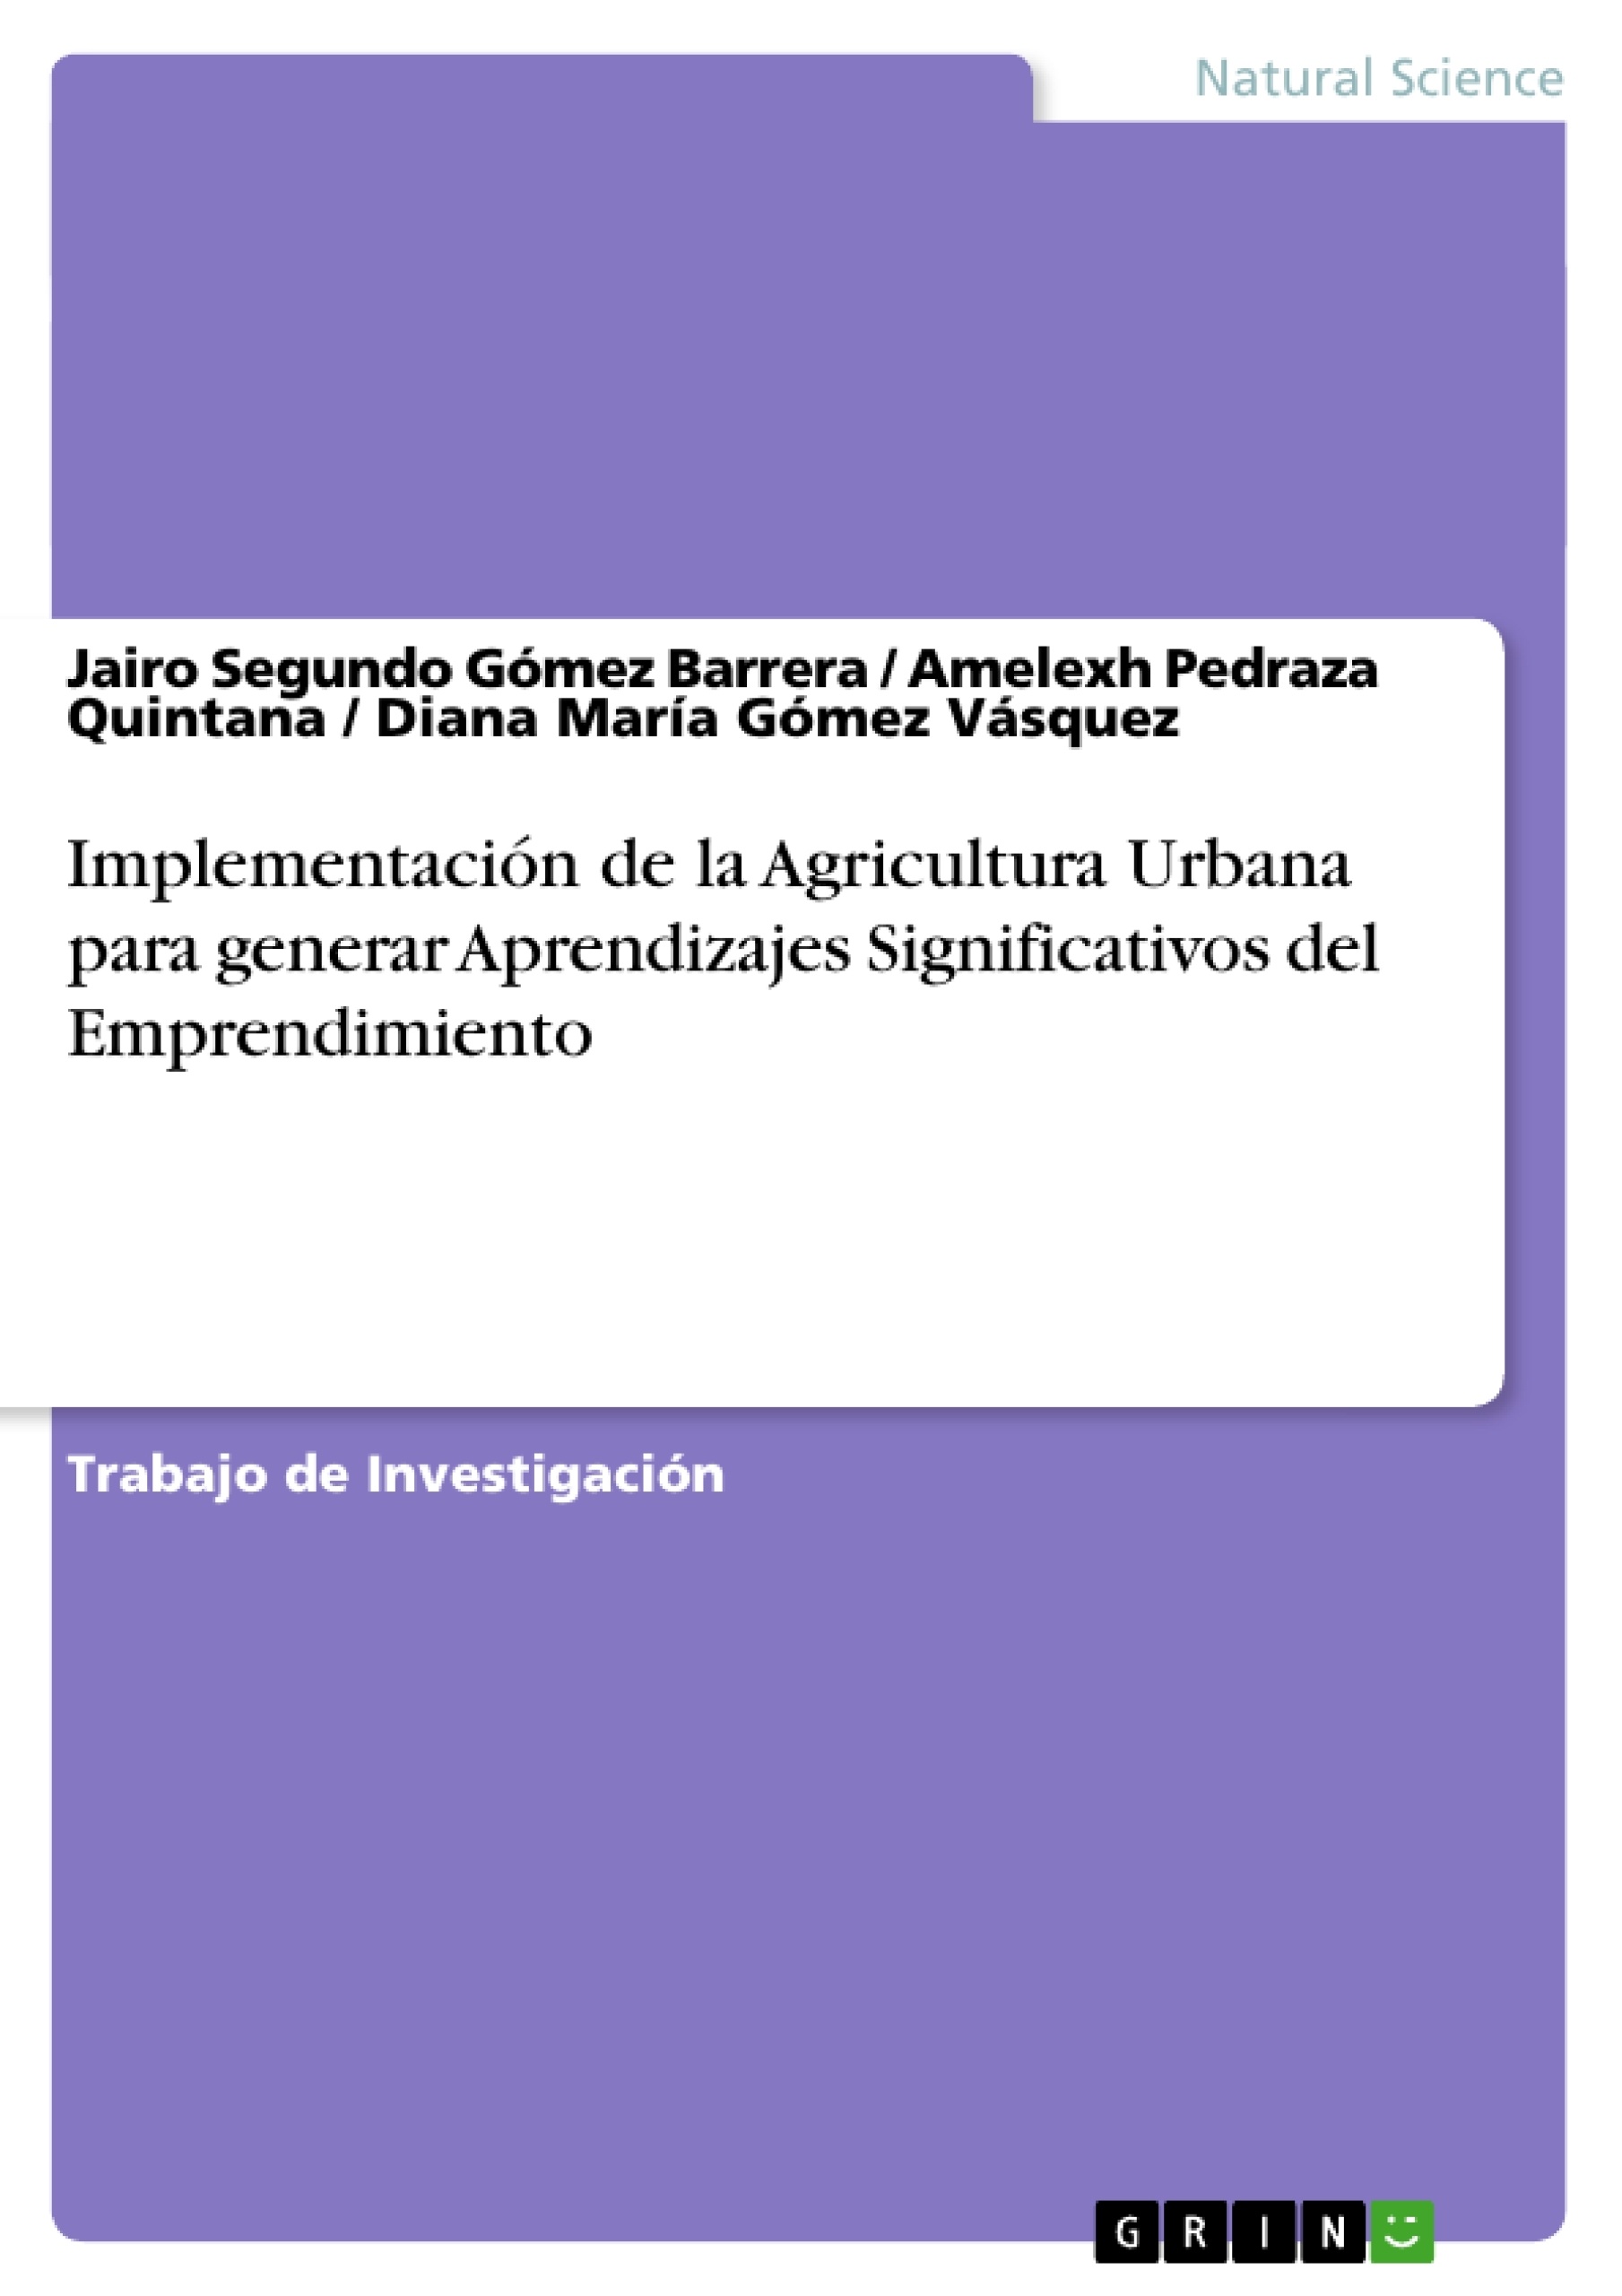 Title: Implementación de la Agricultura Urbana para generar Aprendizajes Significativos del Emprendimiento